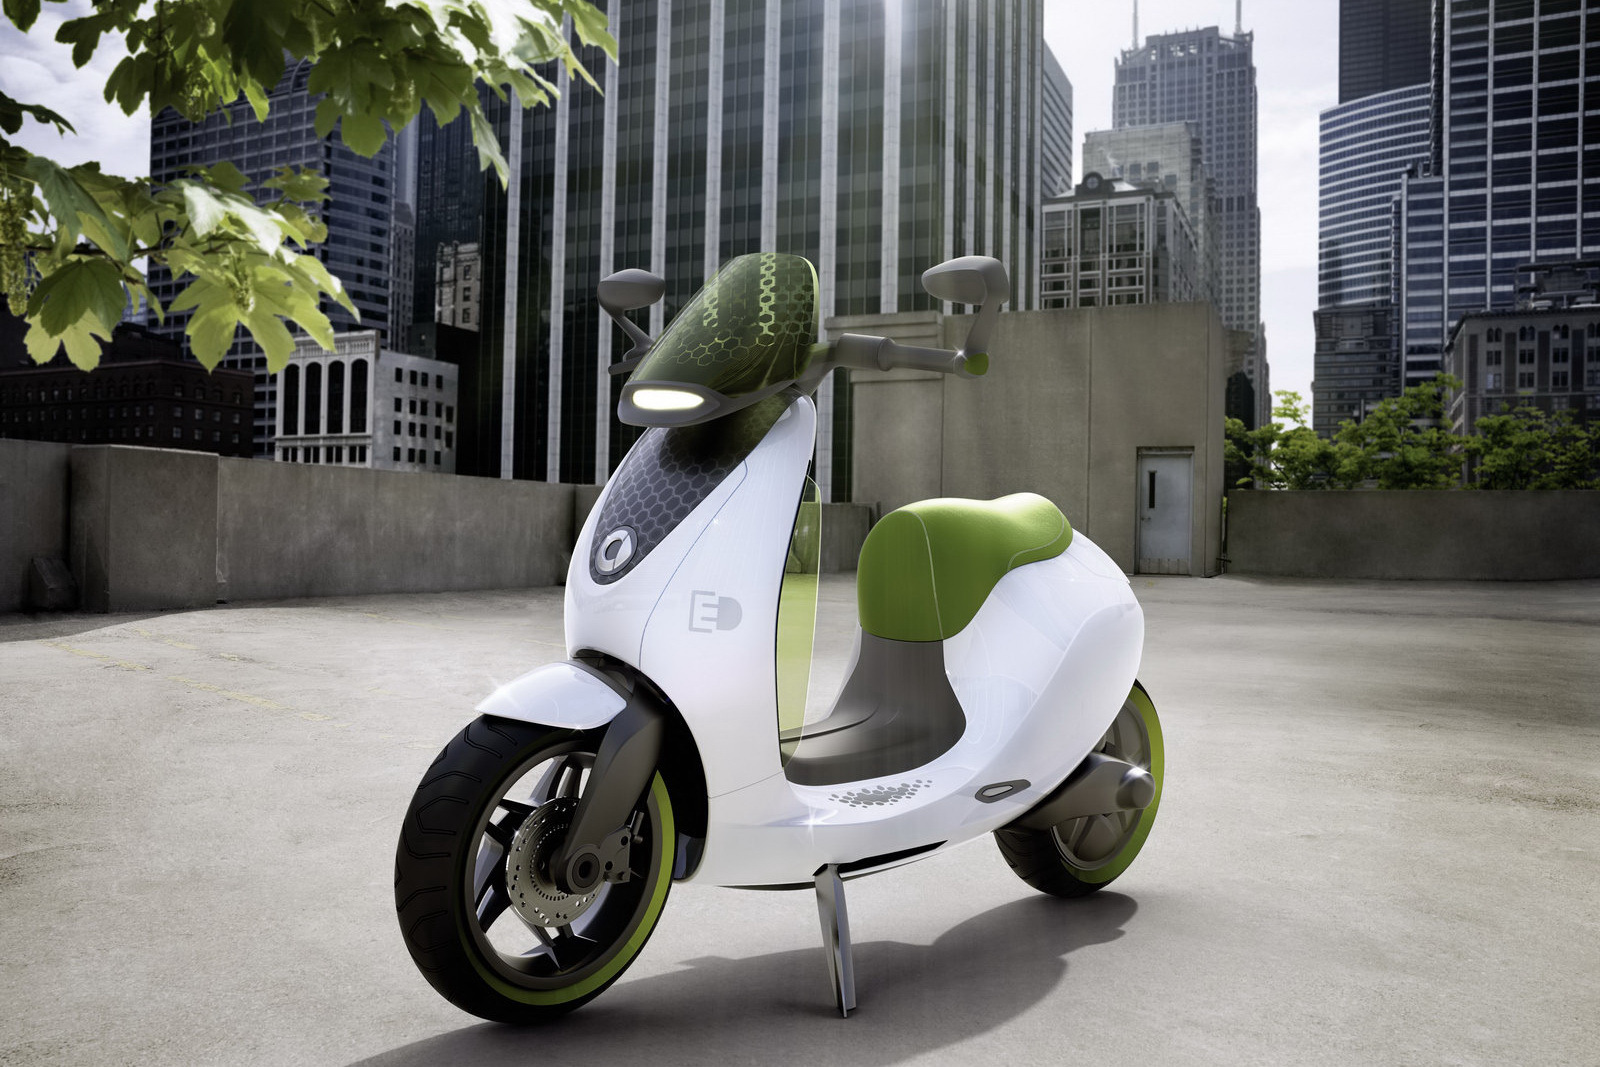 smart escooter poate reprezenta intrarea celor de la smart in domeniul moto